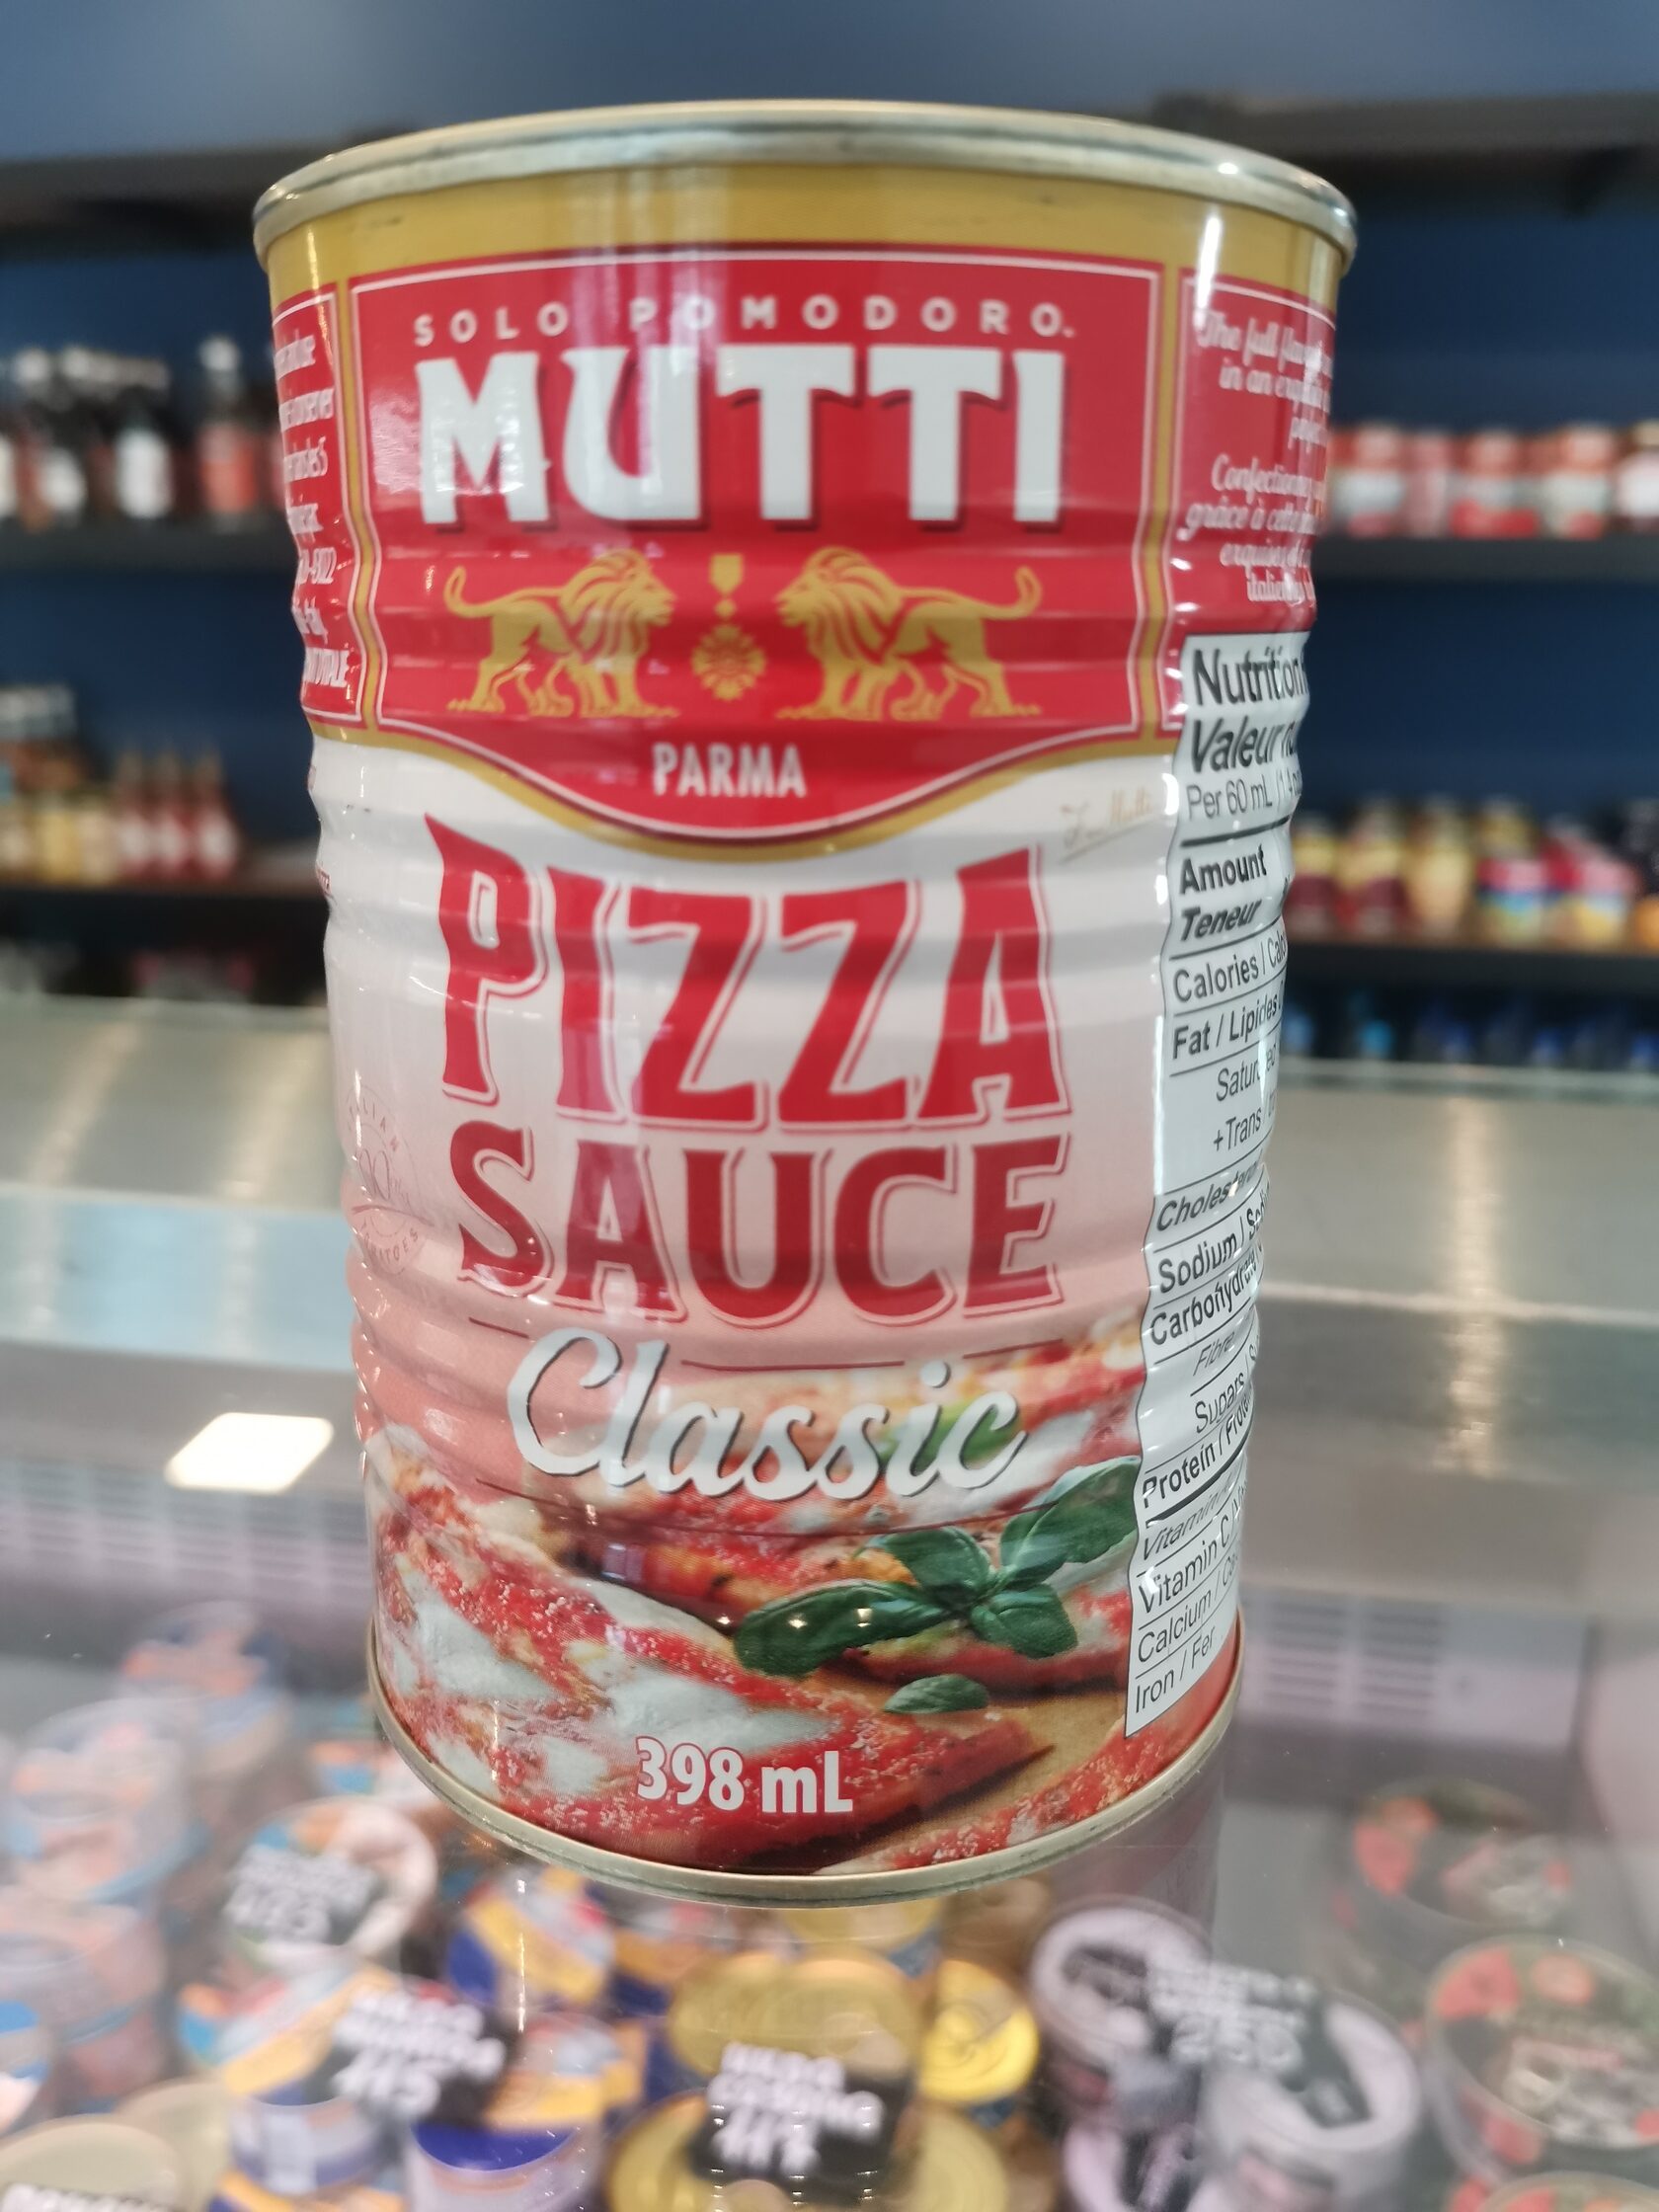 томатный соус для пиццы mutti состав фото 85